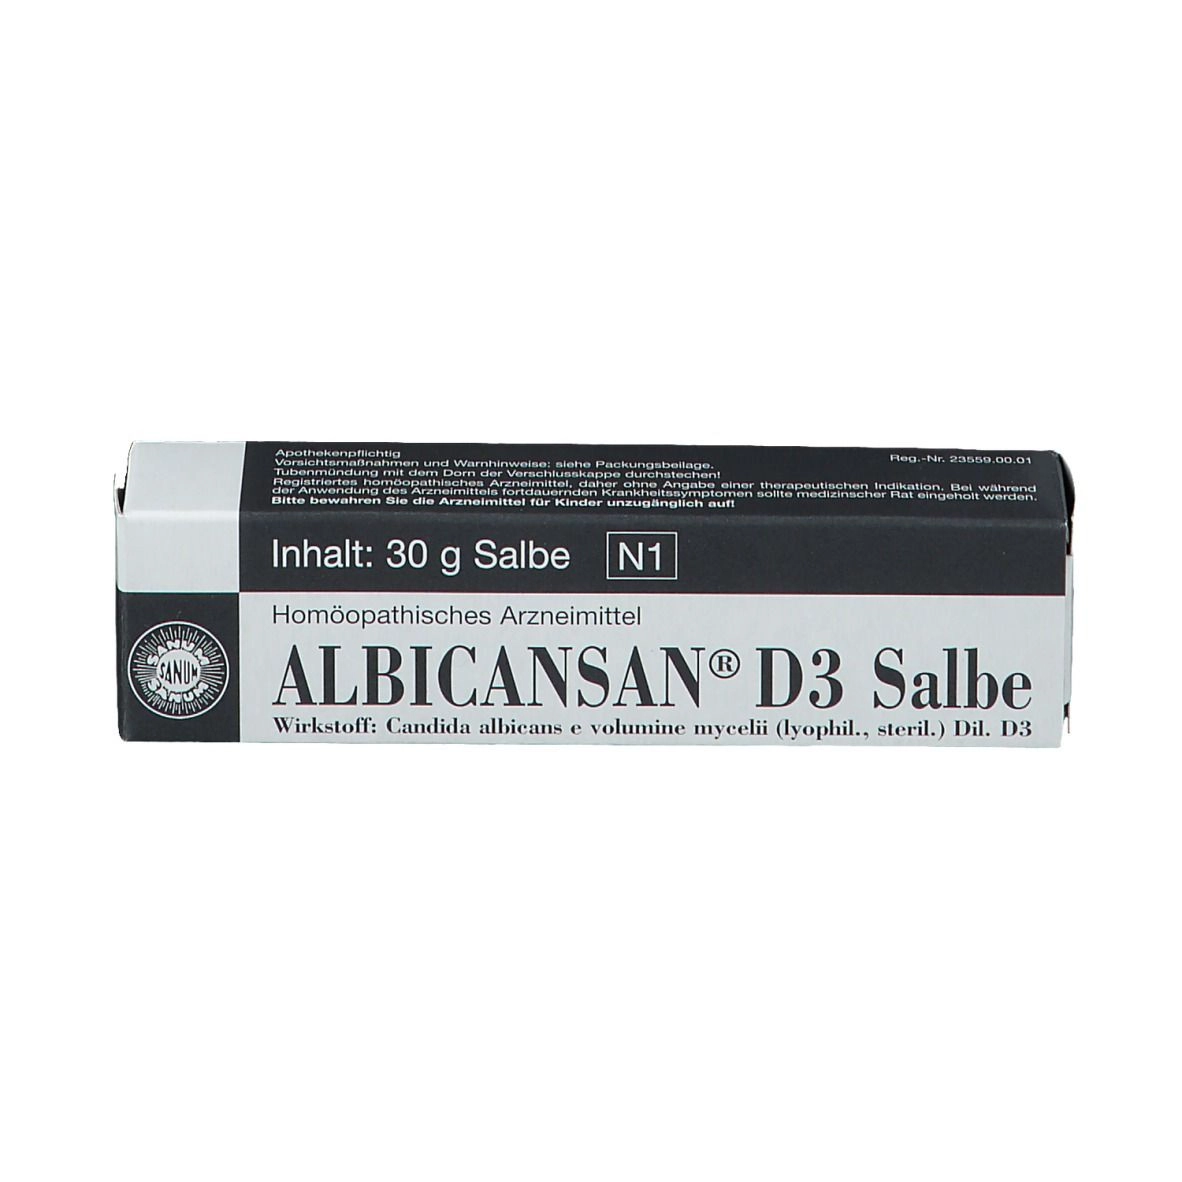 Albicansan® D3 Salbe